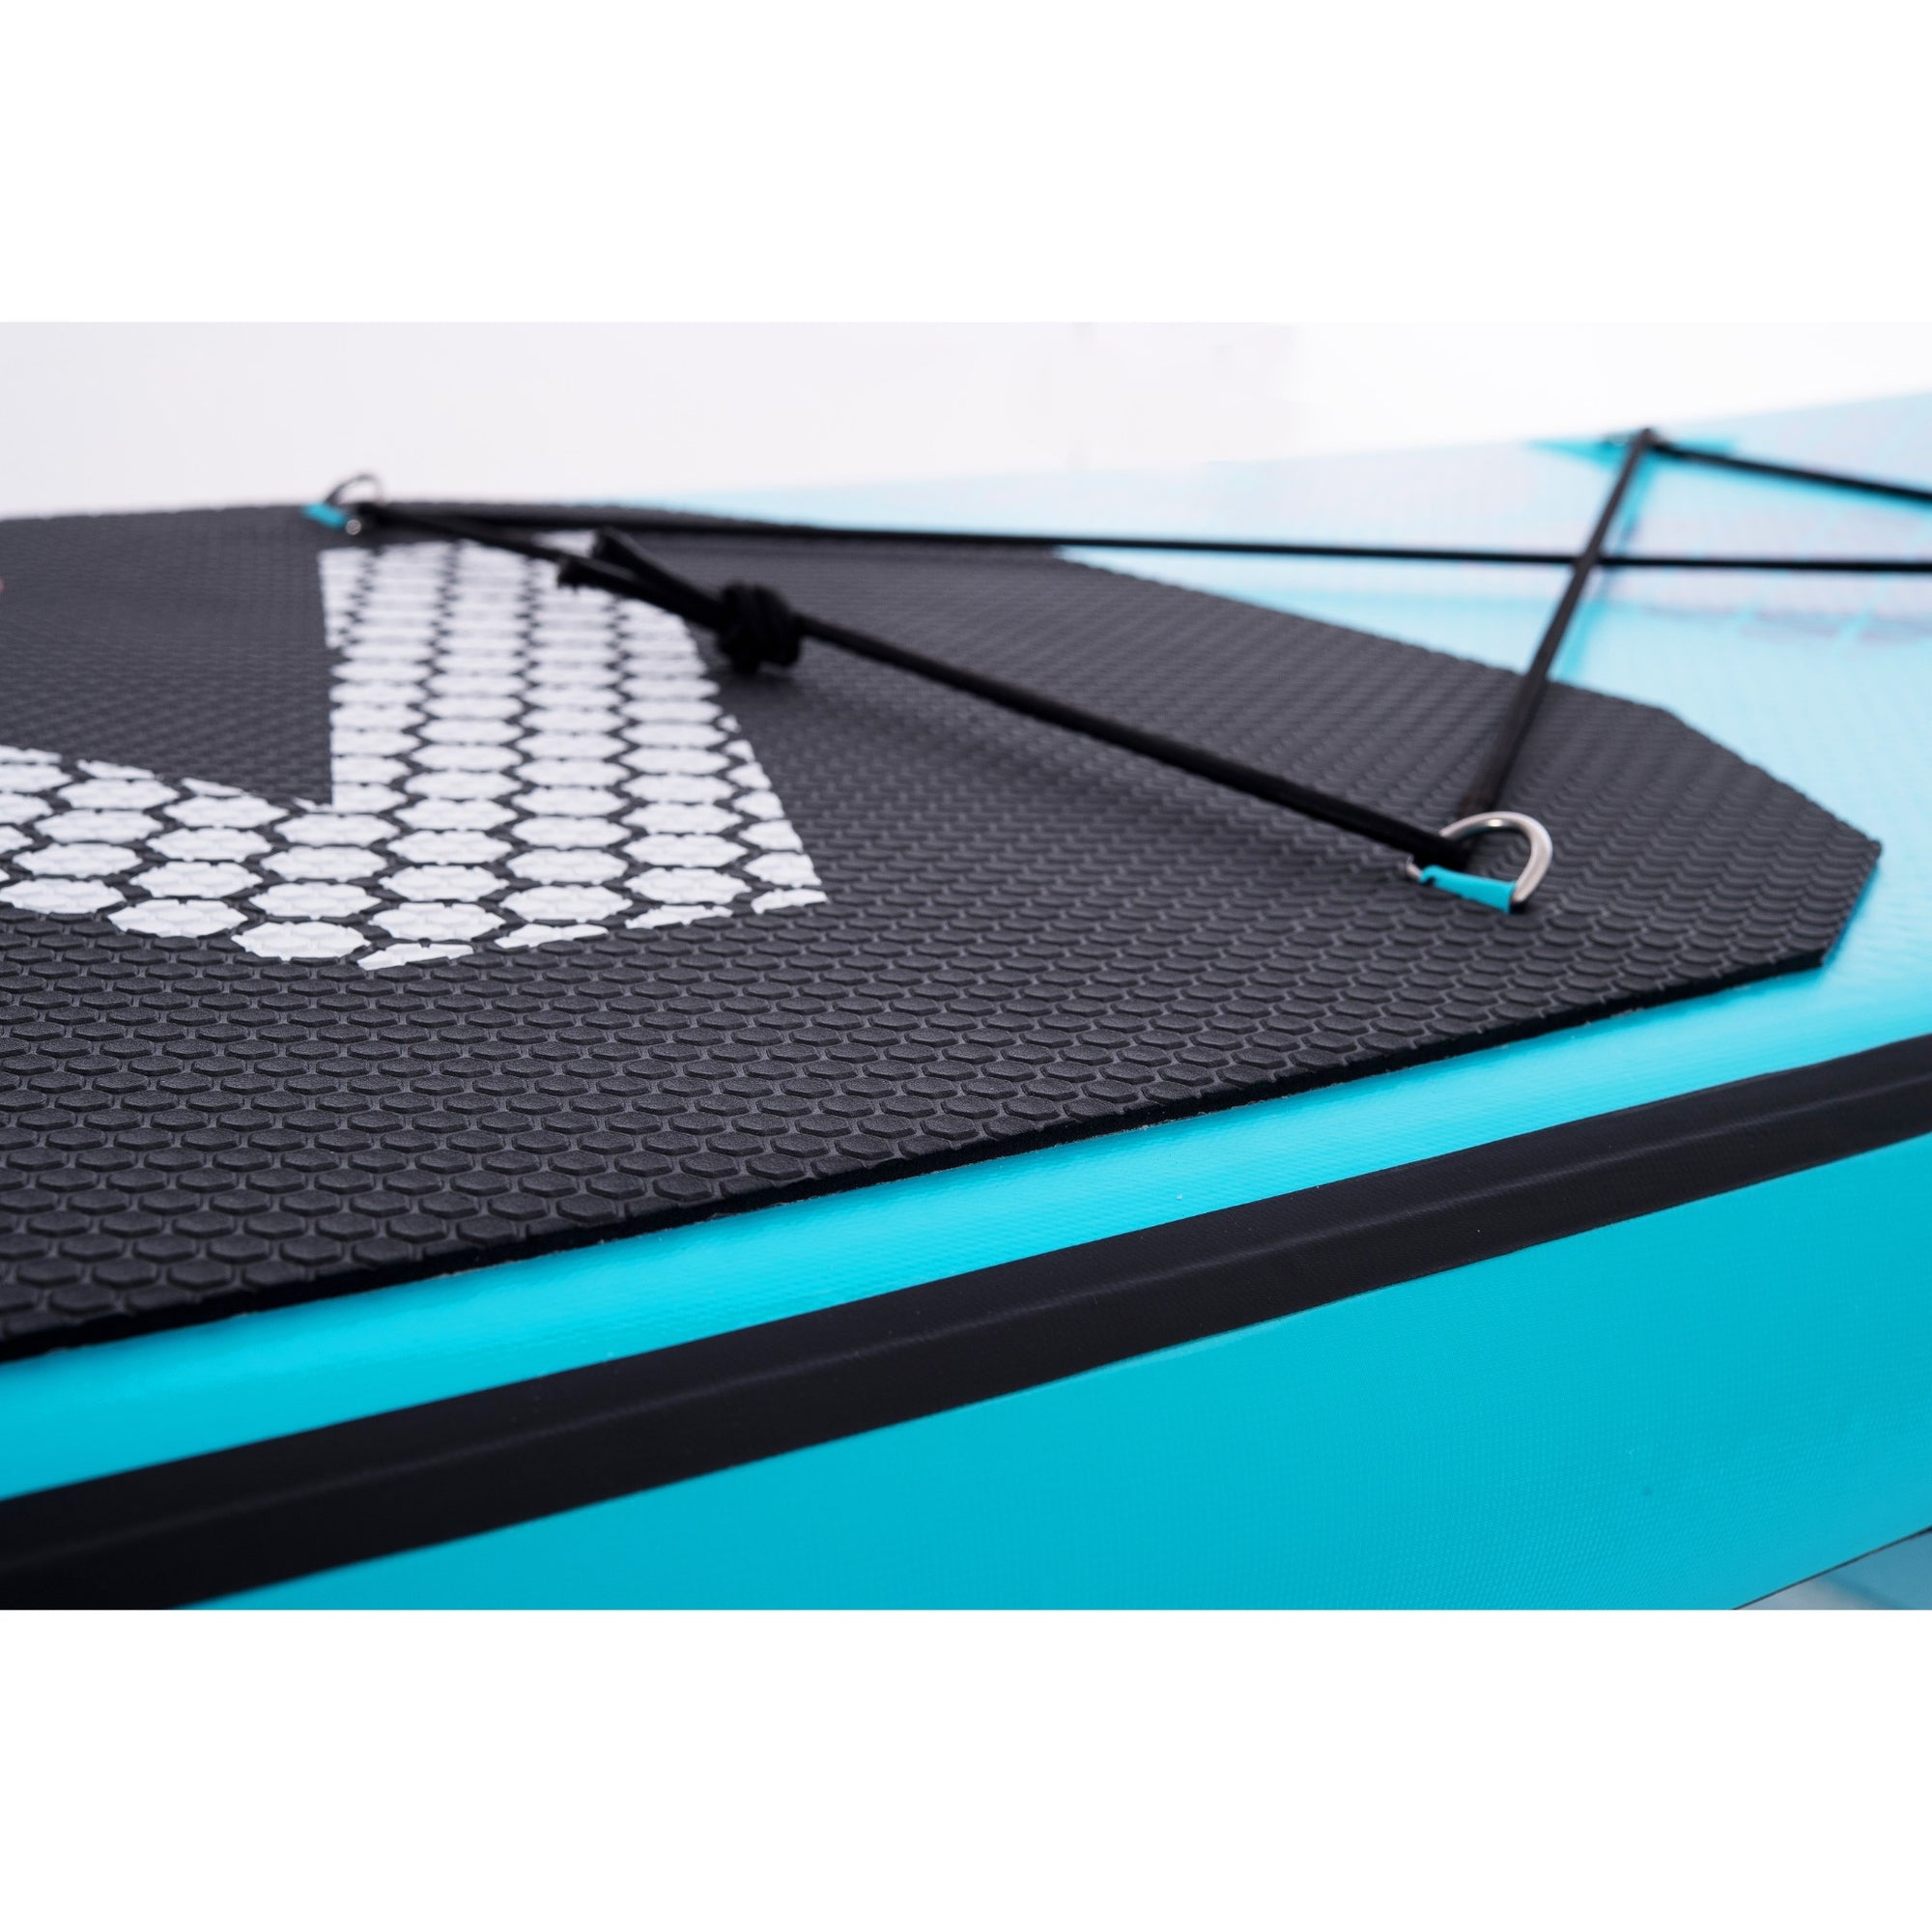 Aqua Marina Vapor 2020 Tabla de Surf Hinchable